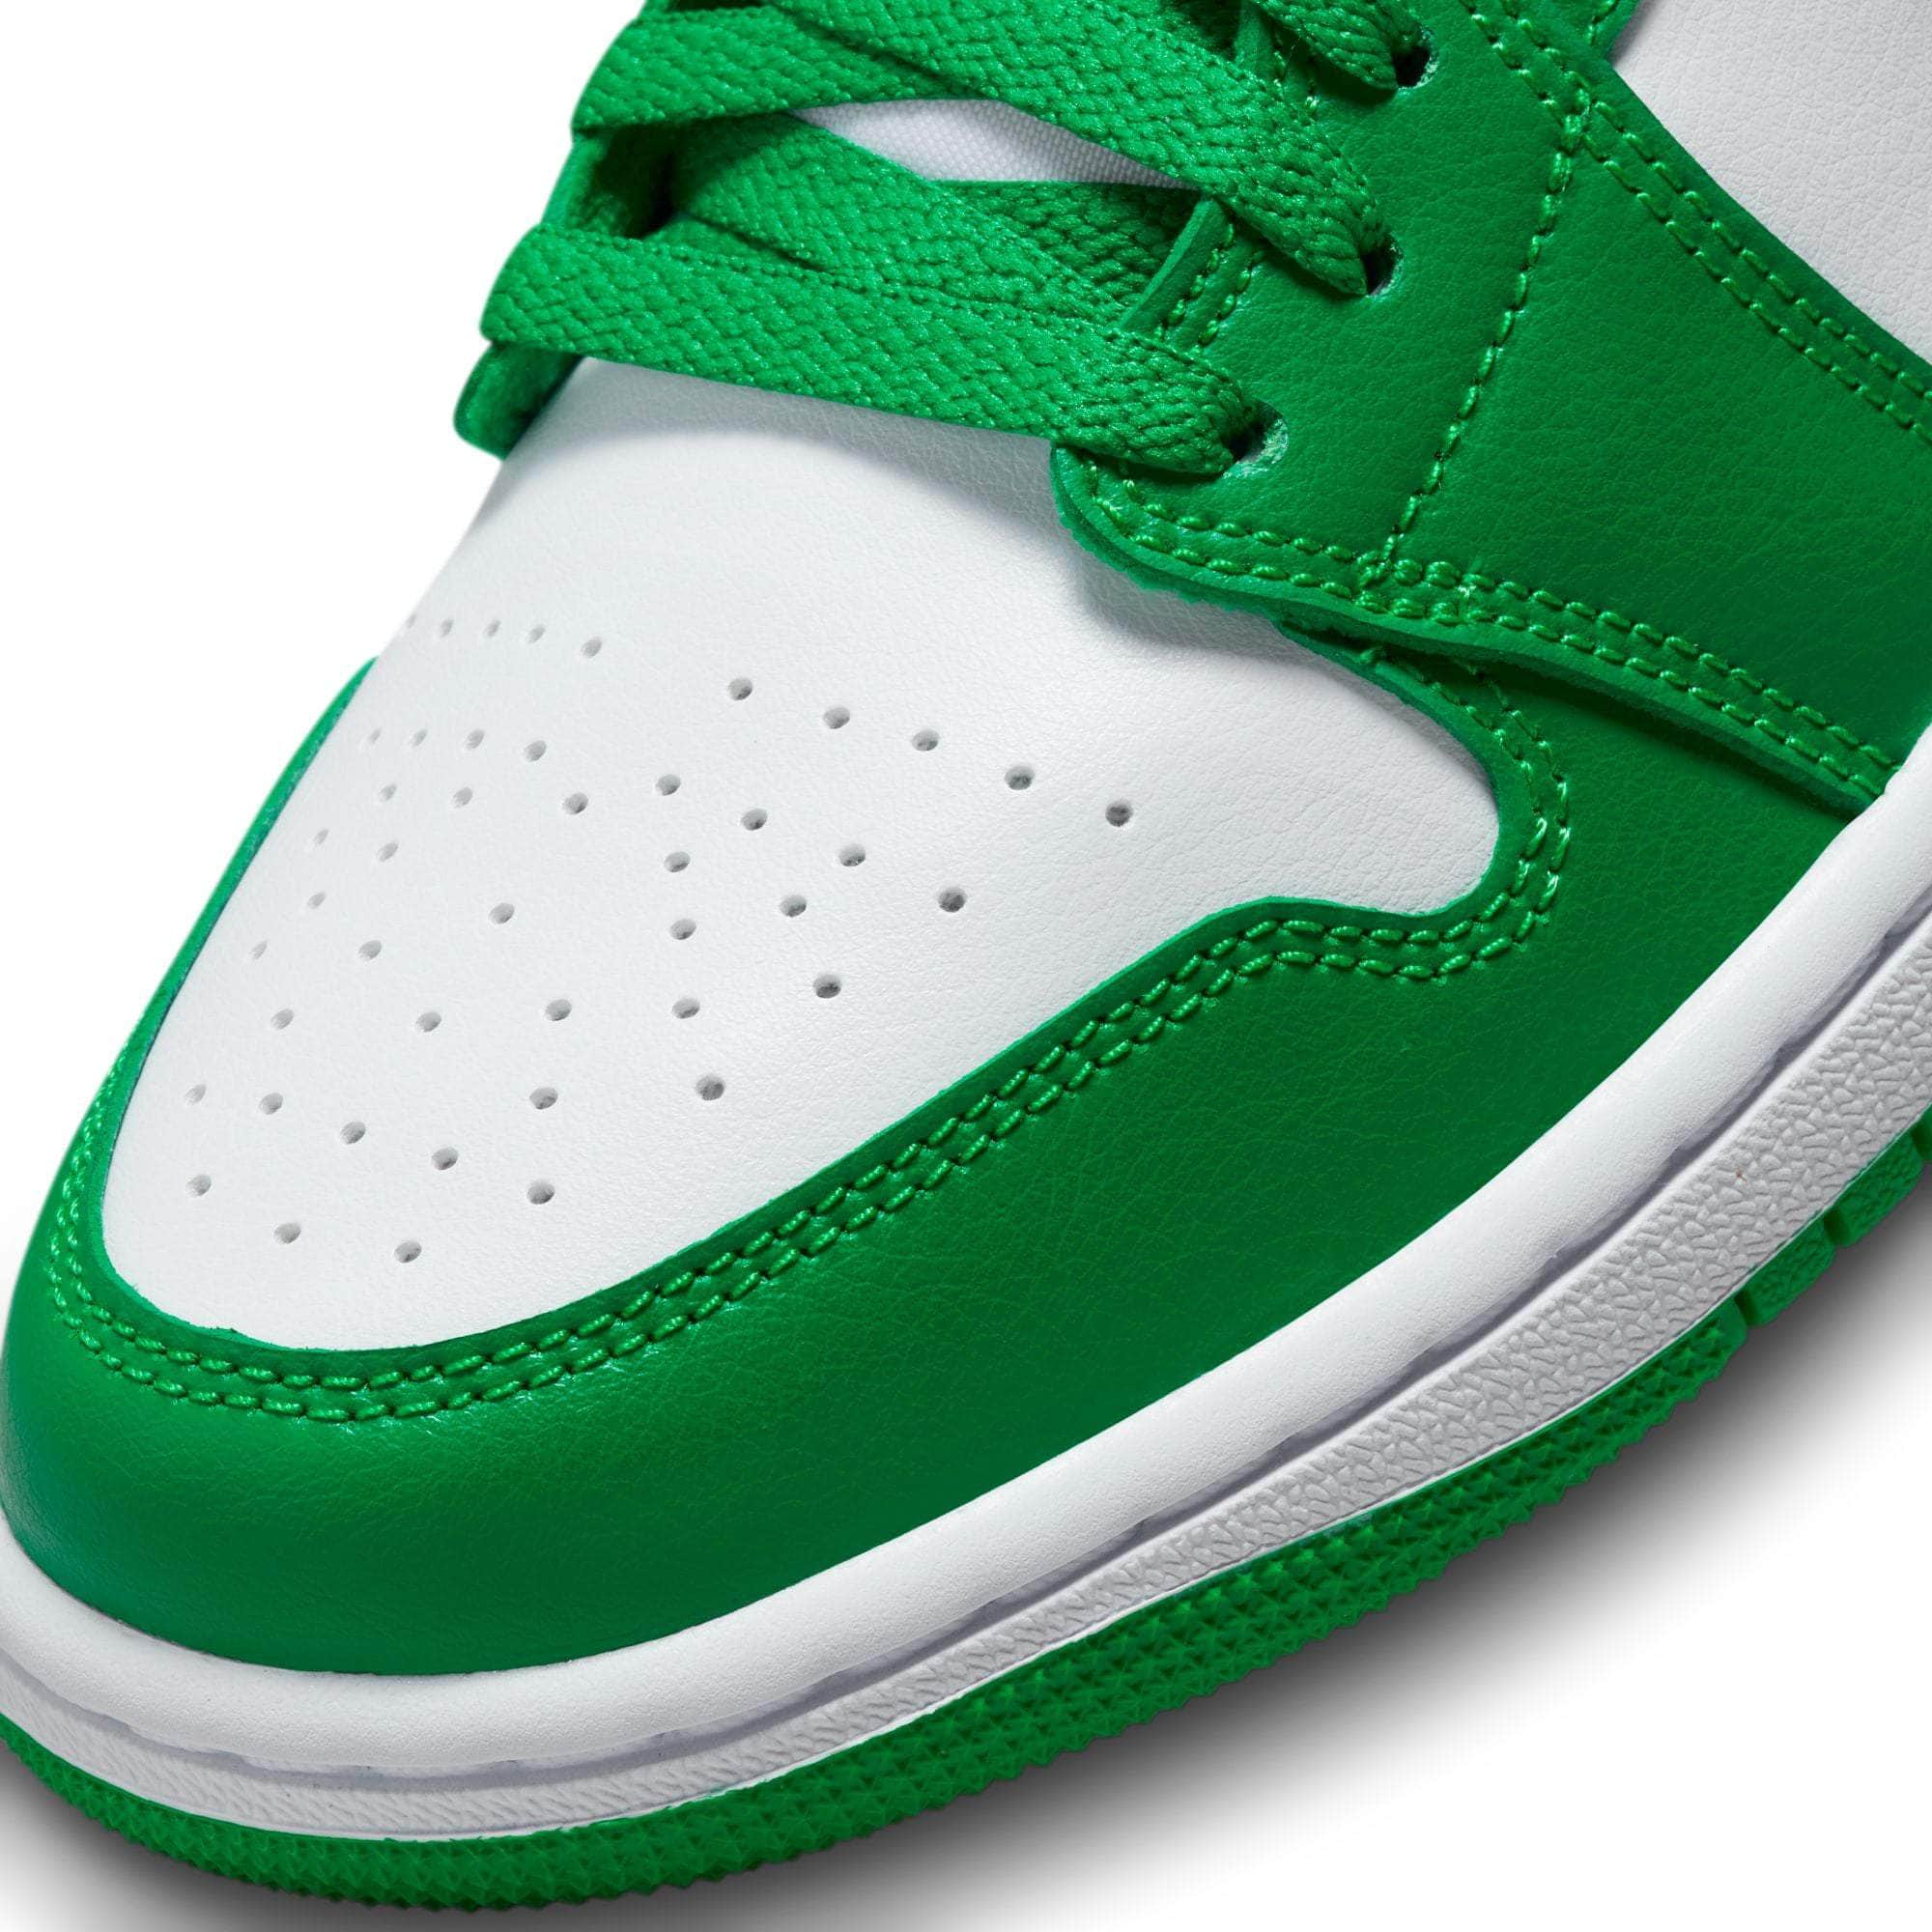 Air Jordan FOOTWEAR Air Jordan 1 Low "Lucky Green" - Women's